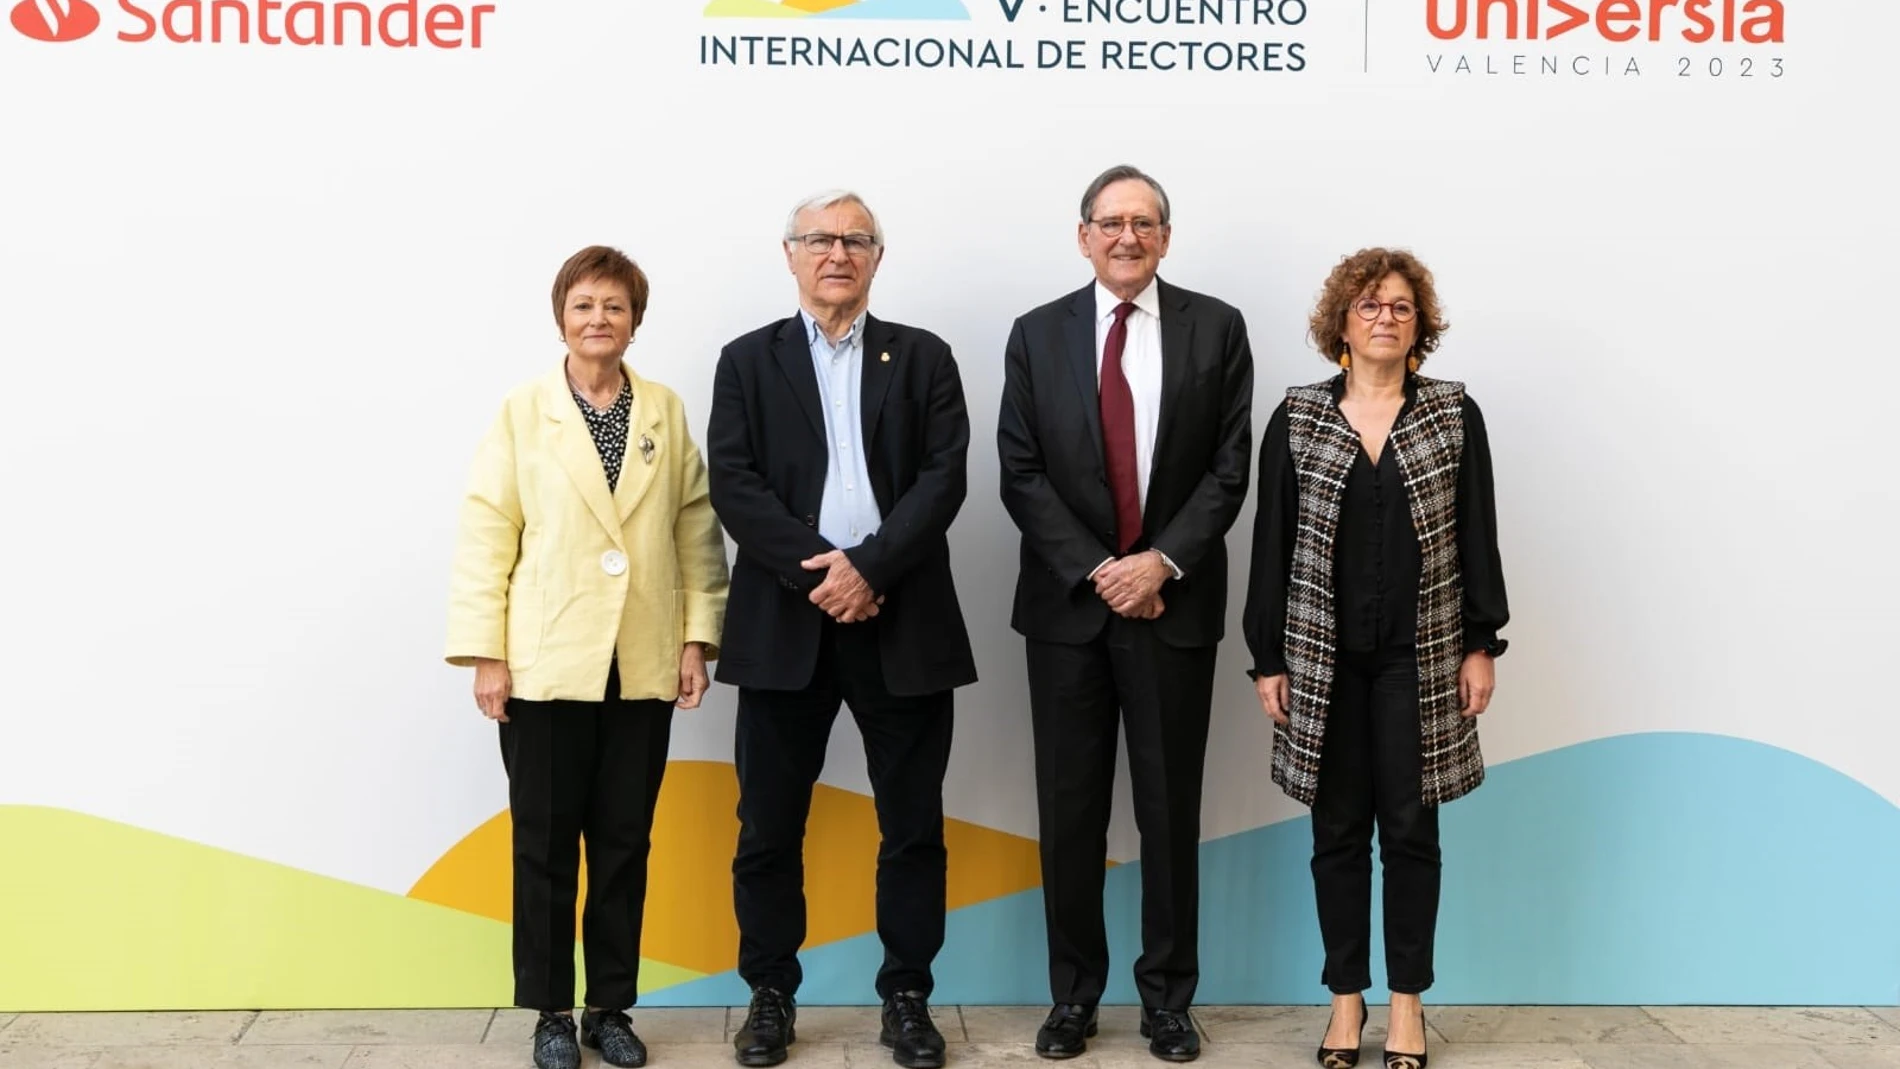 Casi 700 rectores de 14 países acuden al V Encuentro Internacional de Rectores Universia del 8 al 10 de mayo en Valencia